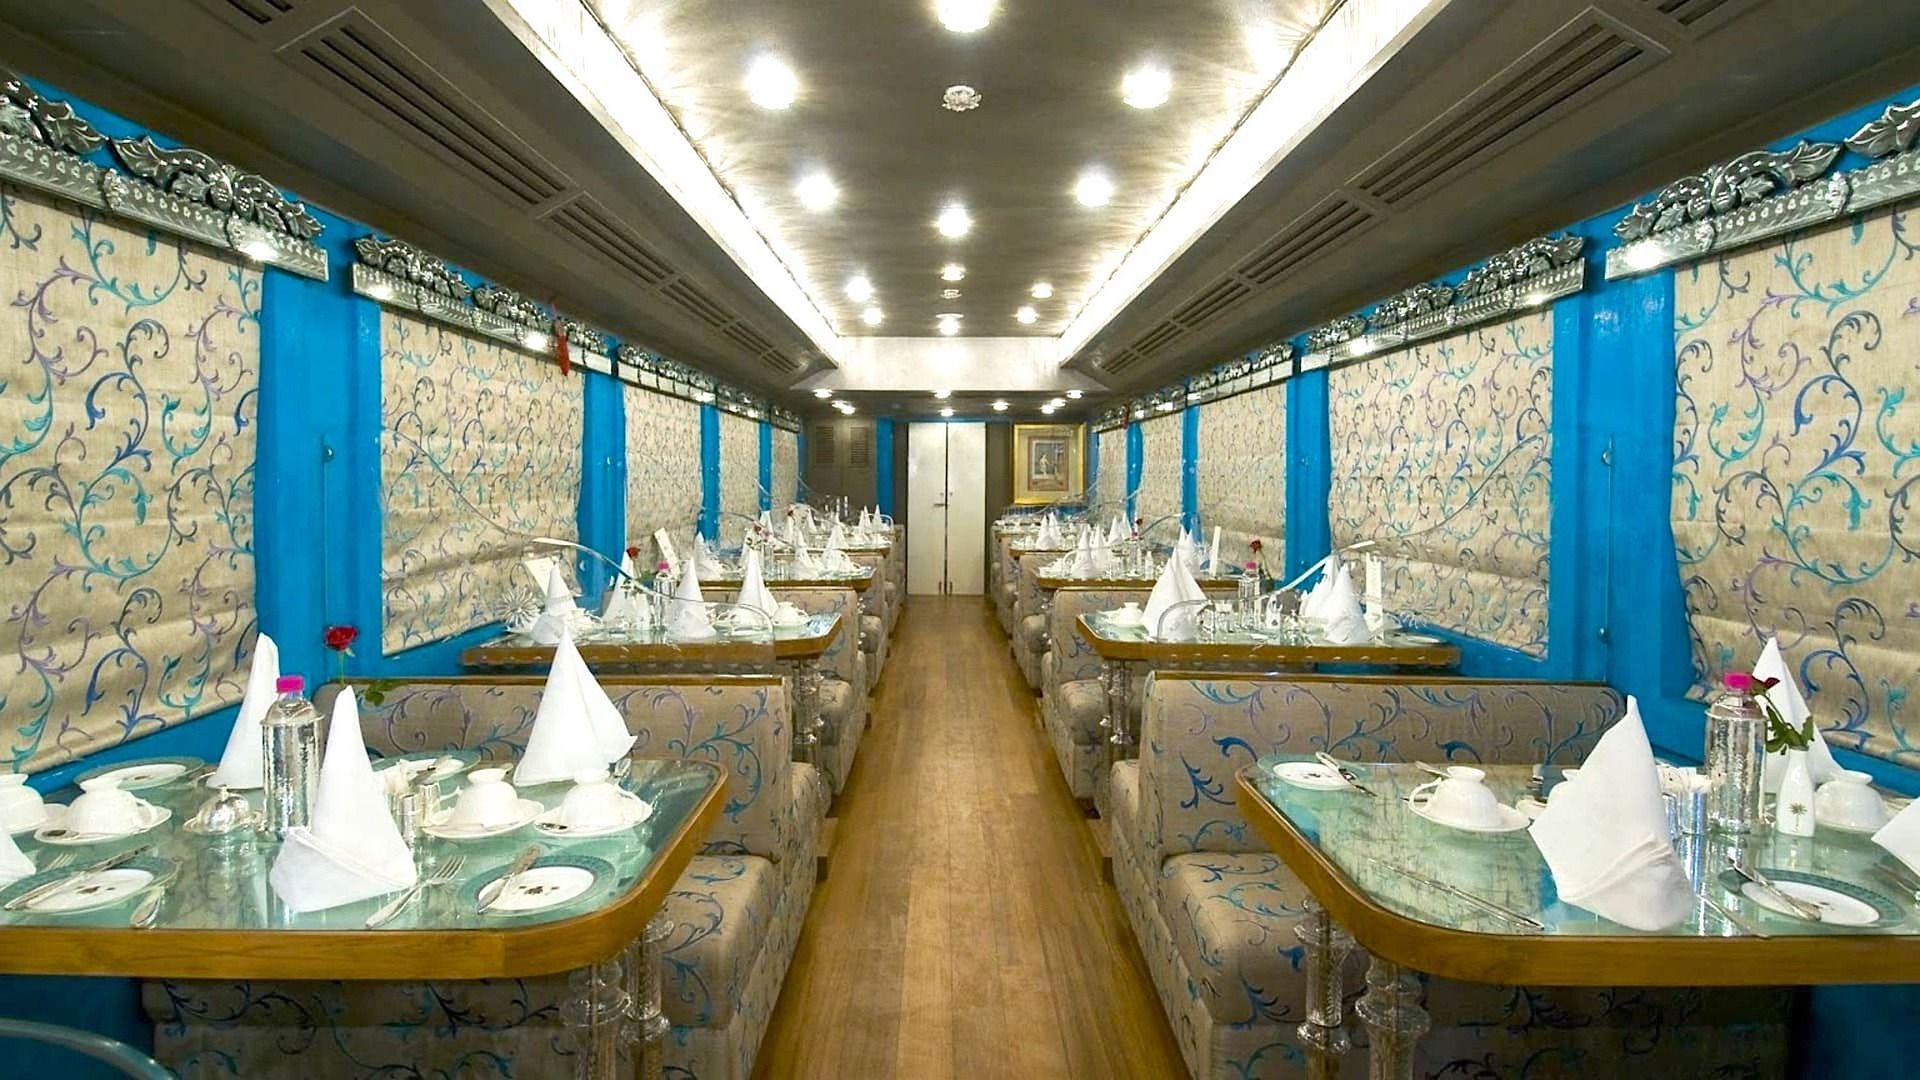 Amtrak Dining Cabin